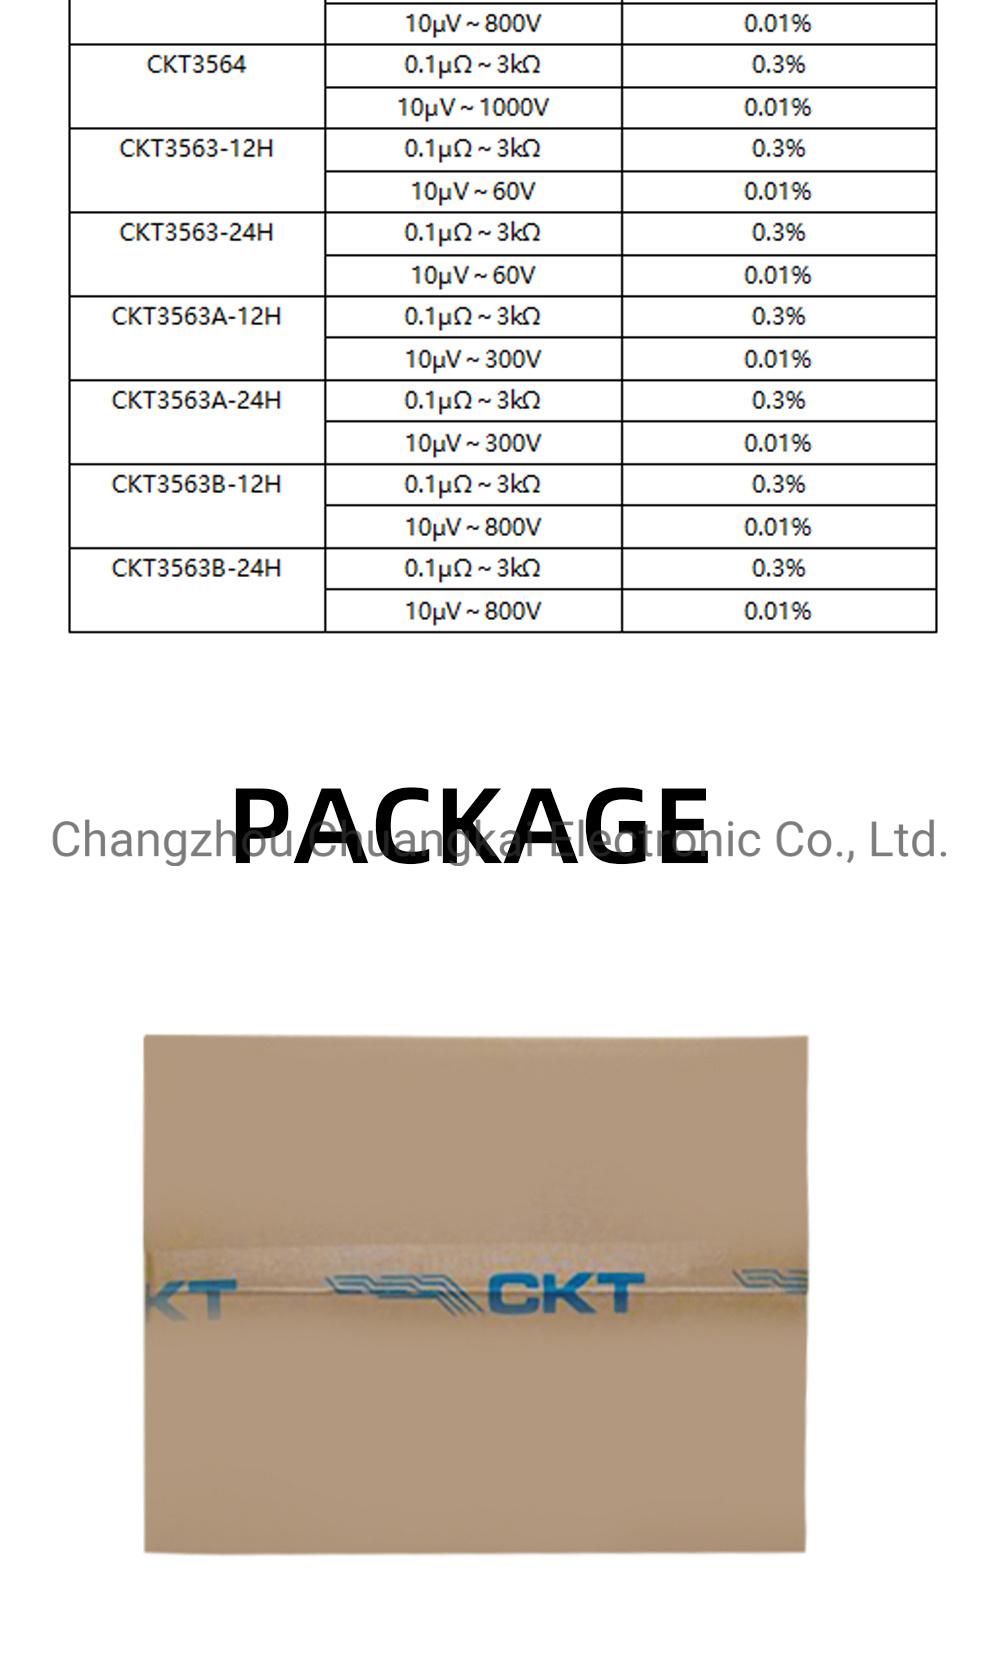 Battery Meter Battery Internal Resistance Tester for High Voltage Battery (Model CKT3564)